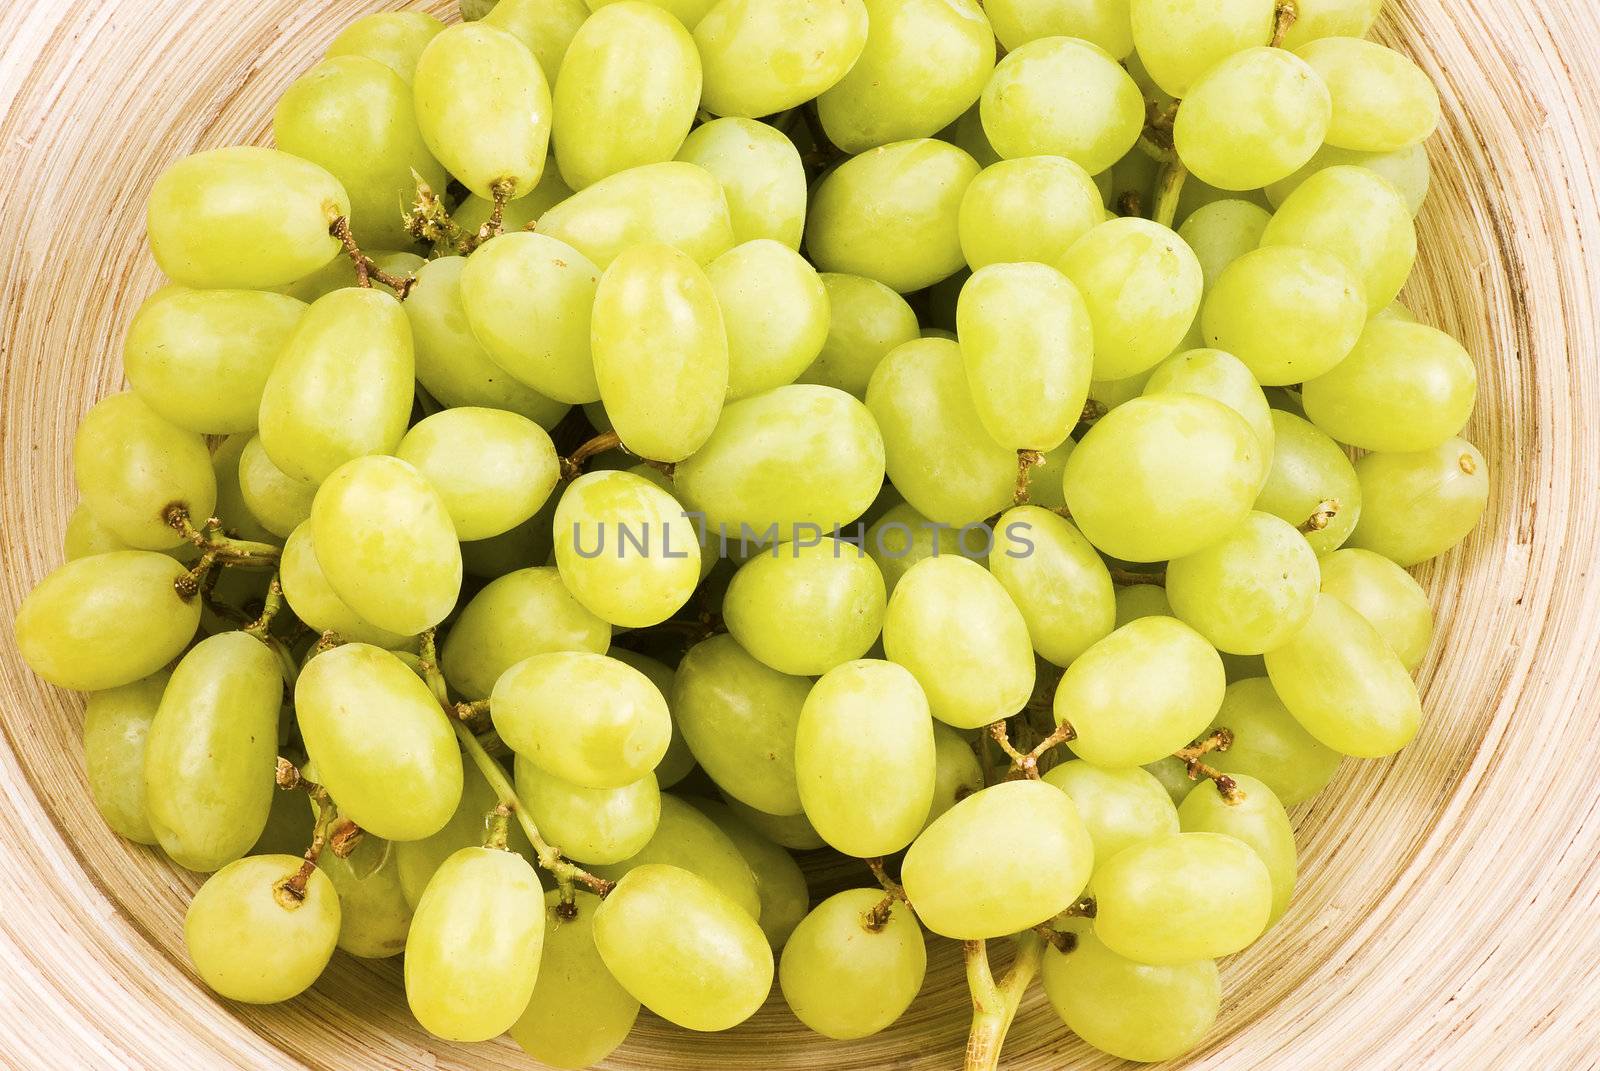 Grapes by caldix